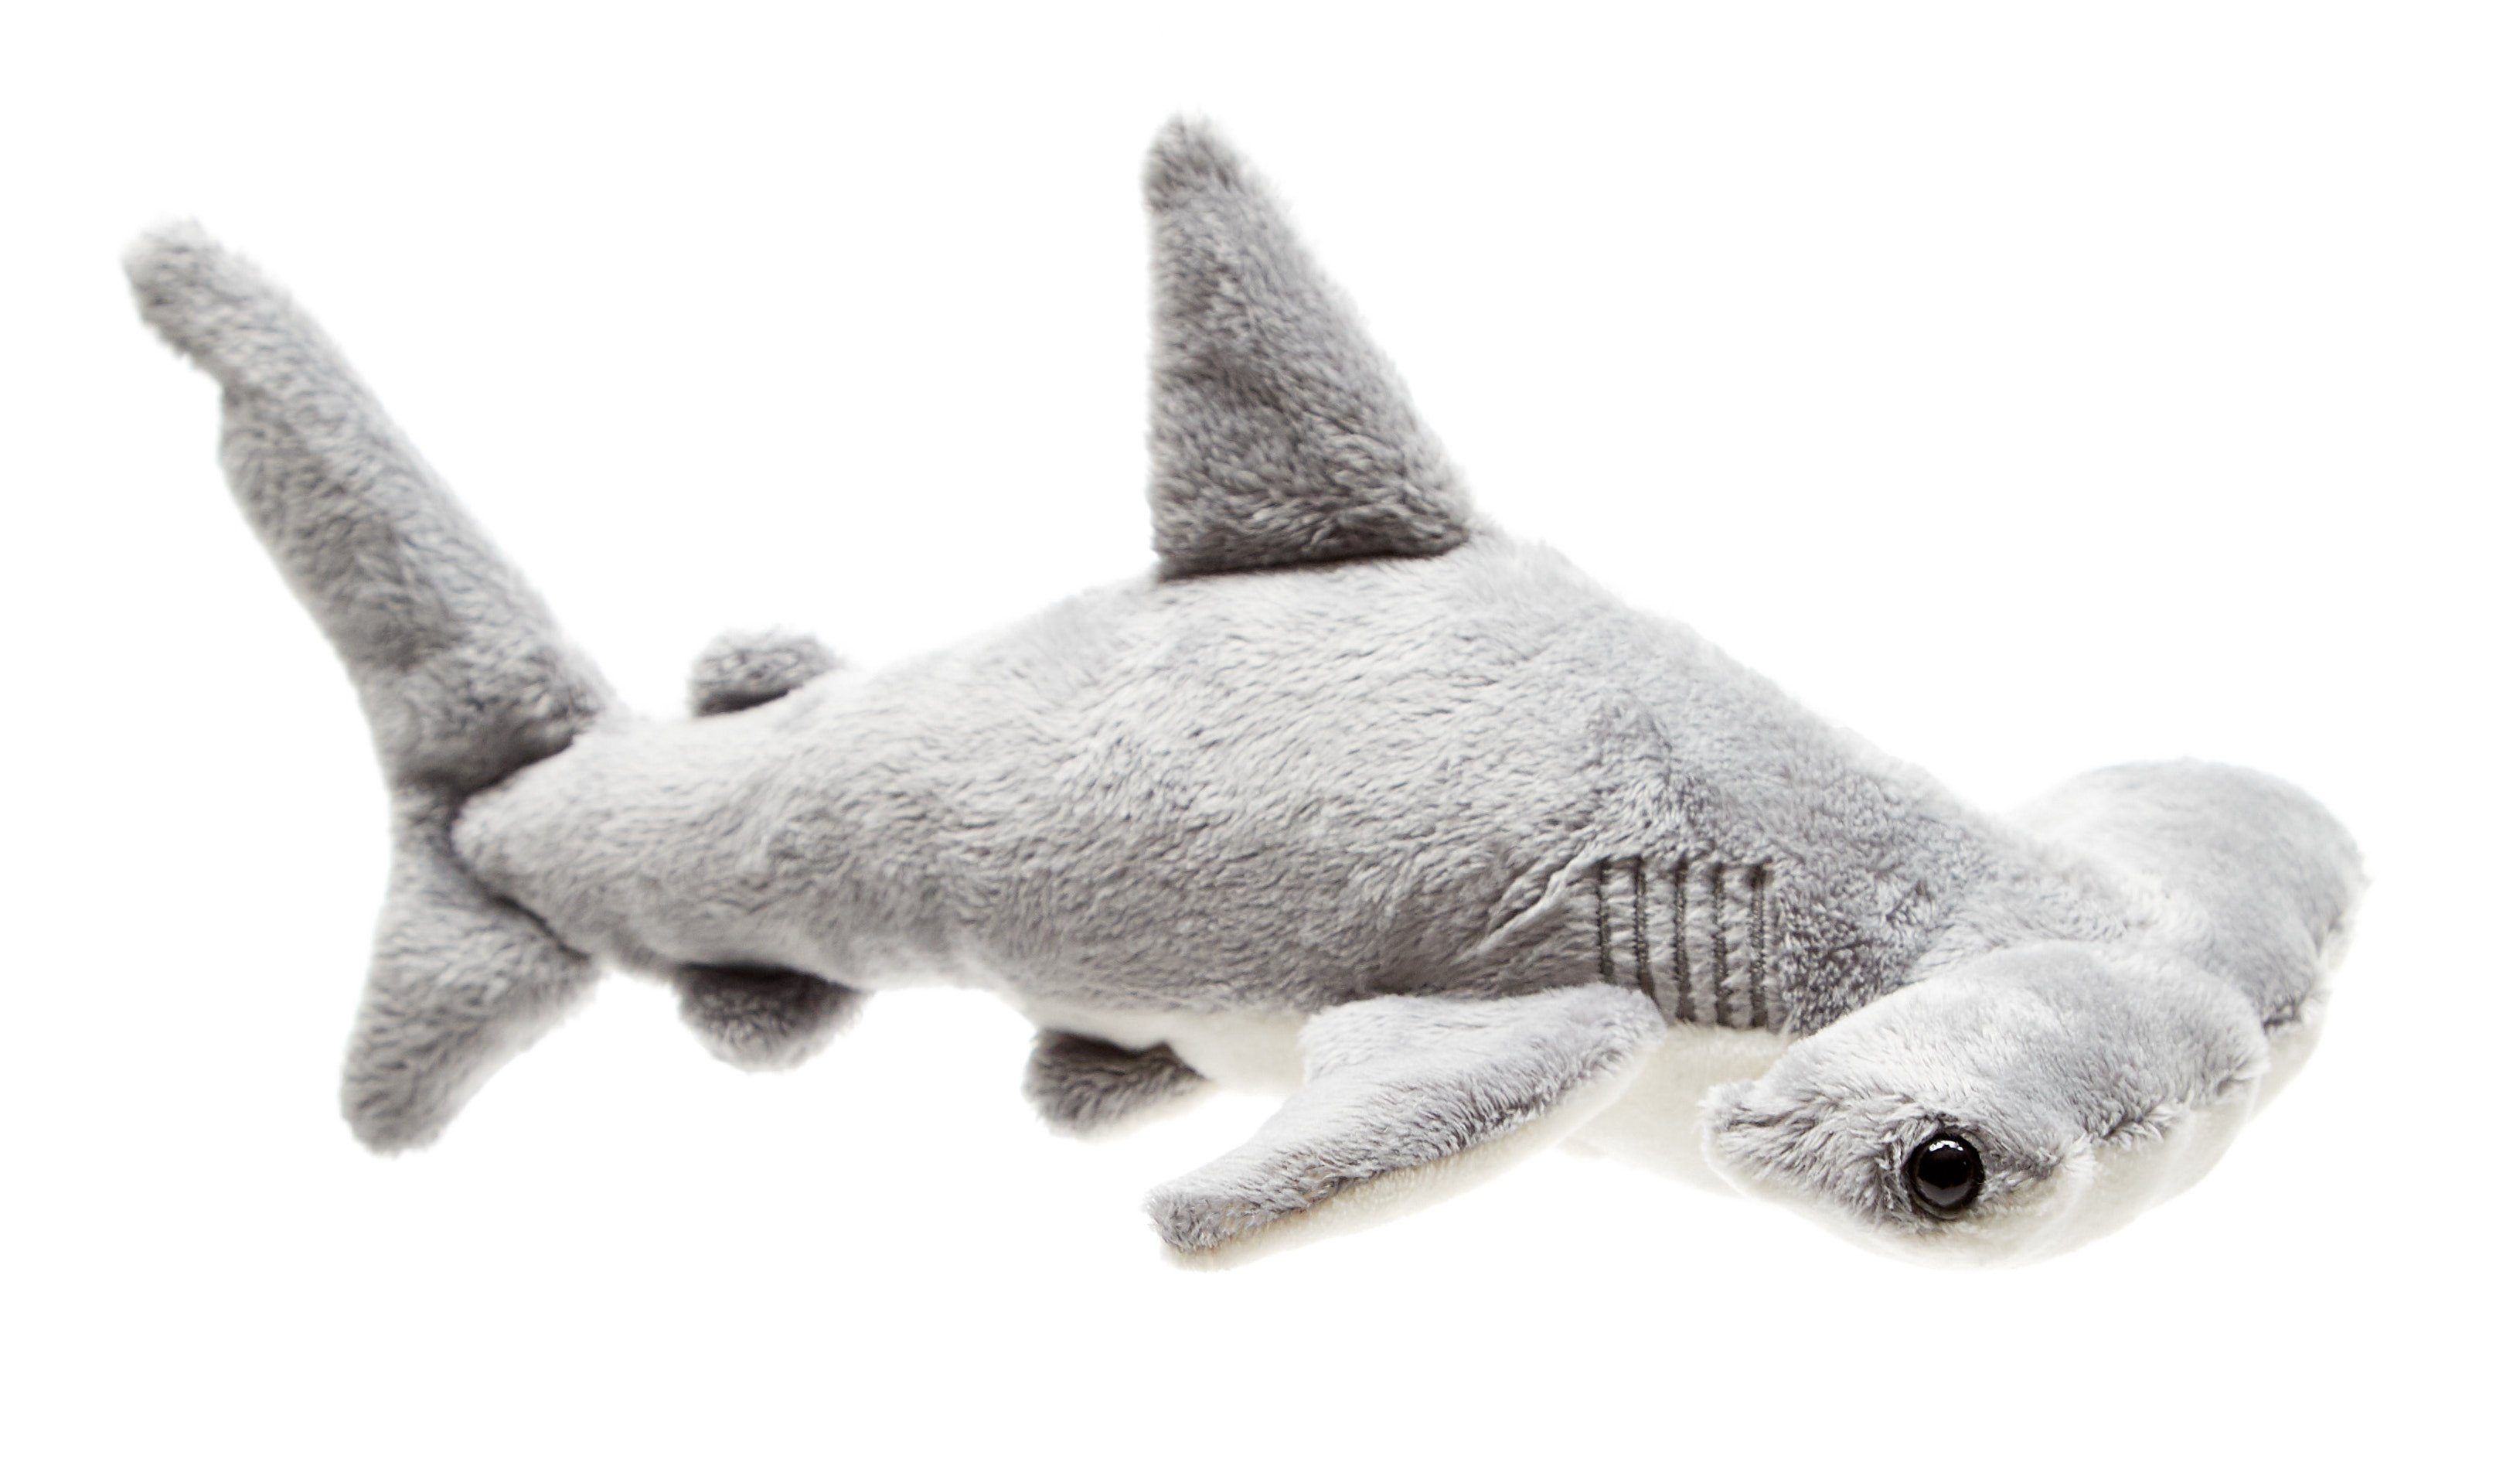 Uni-Toys Kuscheltier Hammerhai - 26 cm (Länge) - Plüsch-Fisch, Hai - Plüschtier, zu 100 % recyceltes Füllmaterial